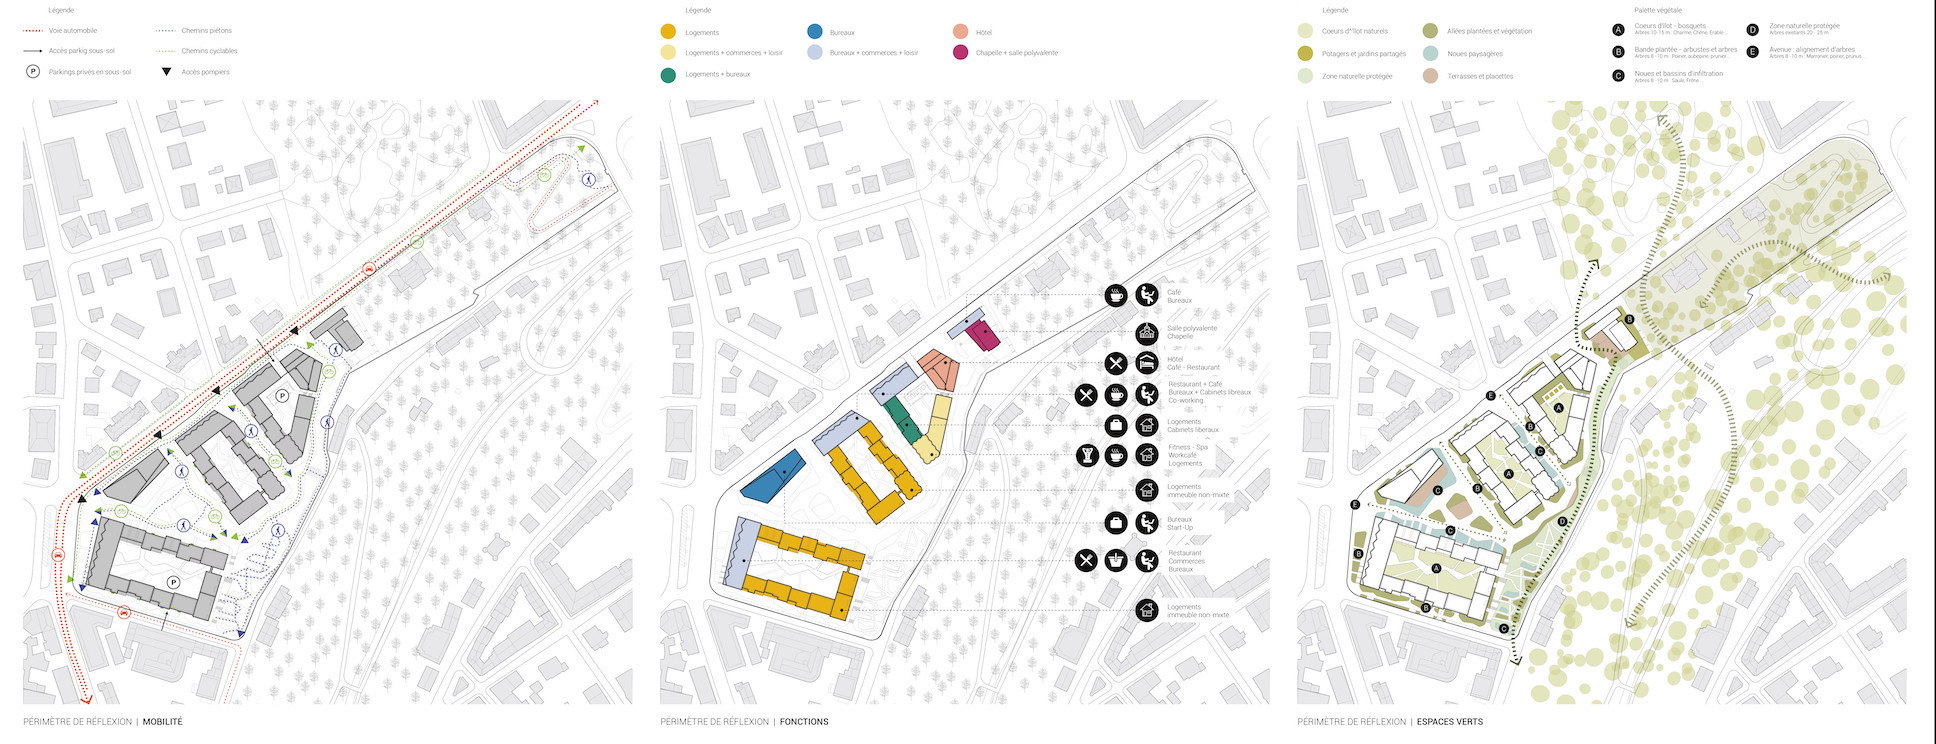 Schémas sur la mobilité, fonctions et espaces verts (Illustration: Metaform Architects/CityTools/Agence Babylone)